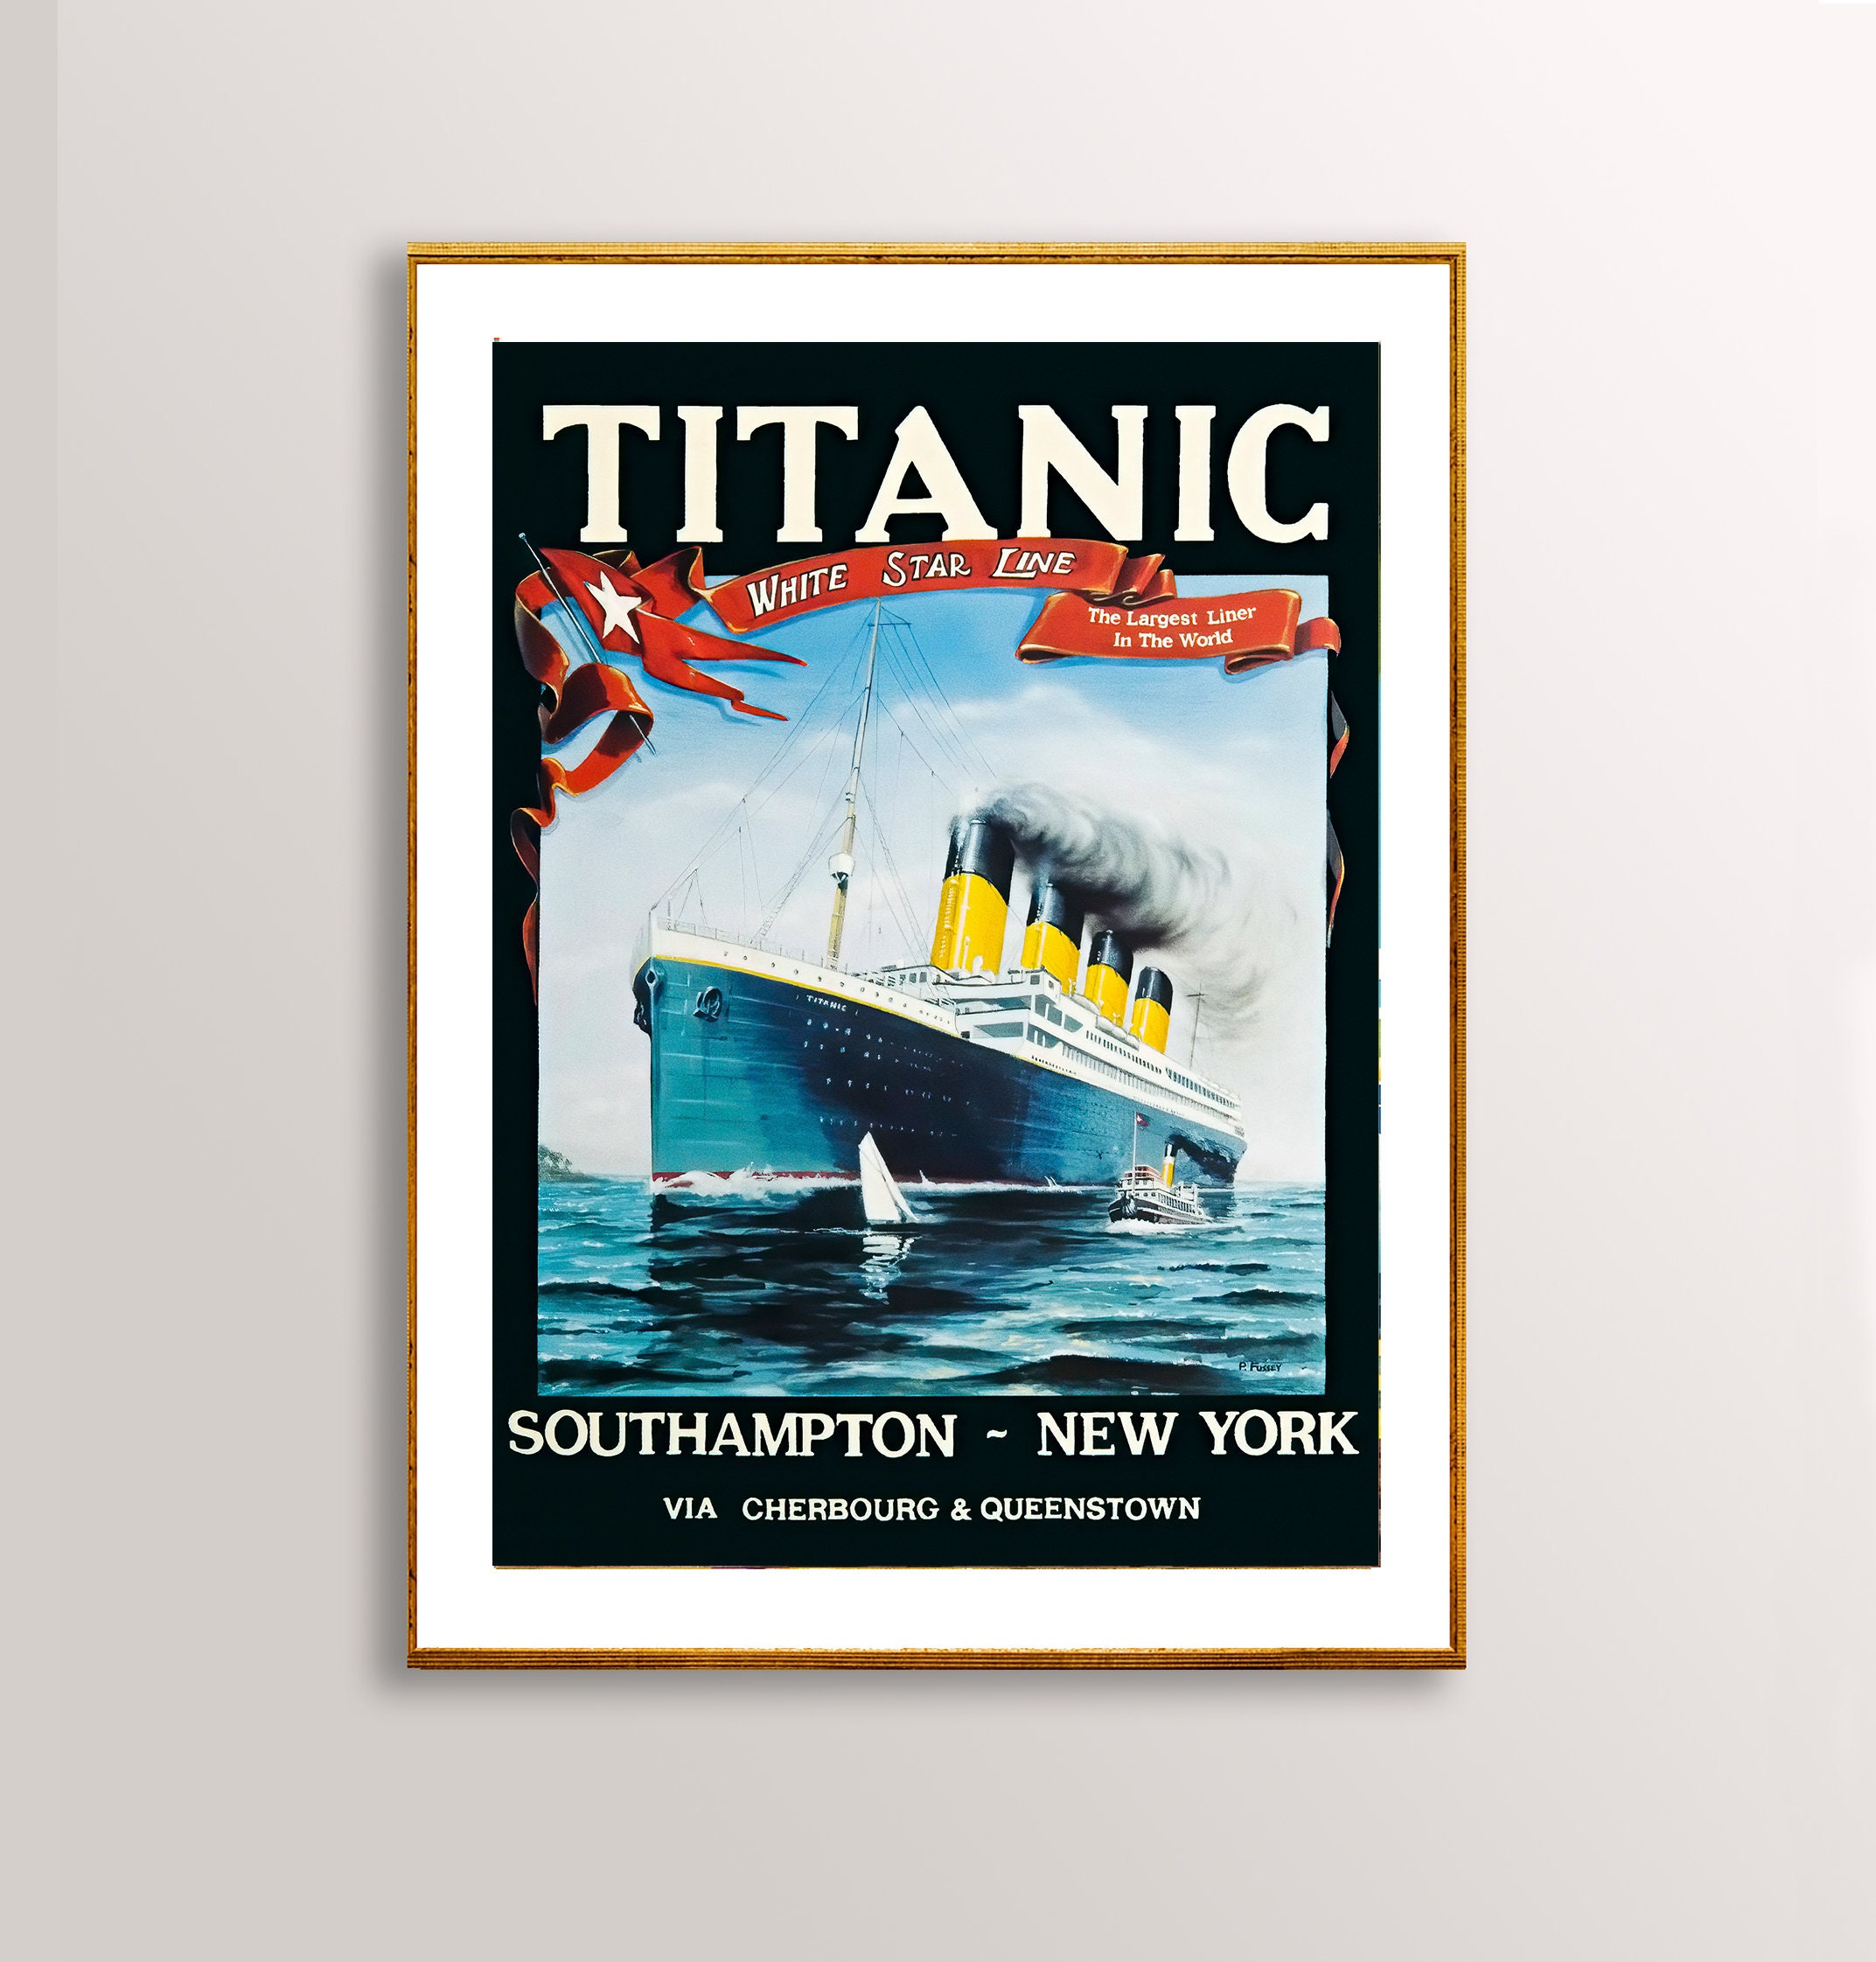 Titanic White Star Line Vintage Travel Poster 1912 Poster - Etsy